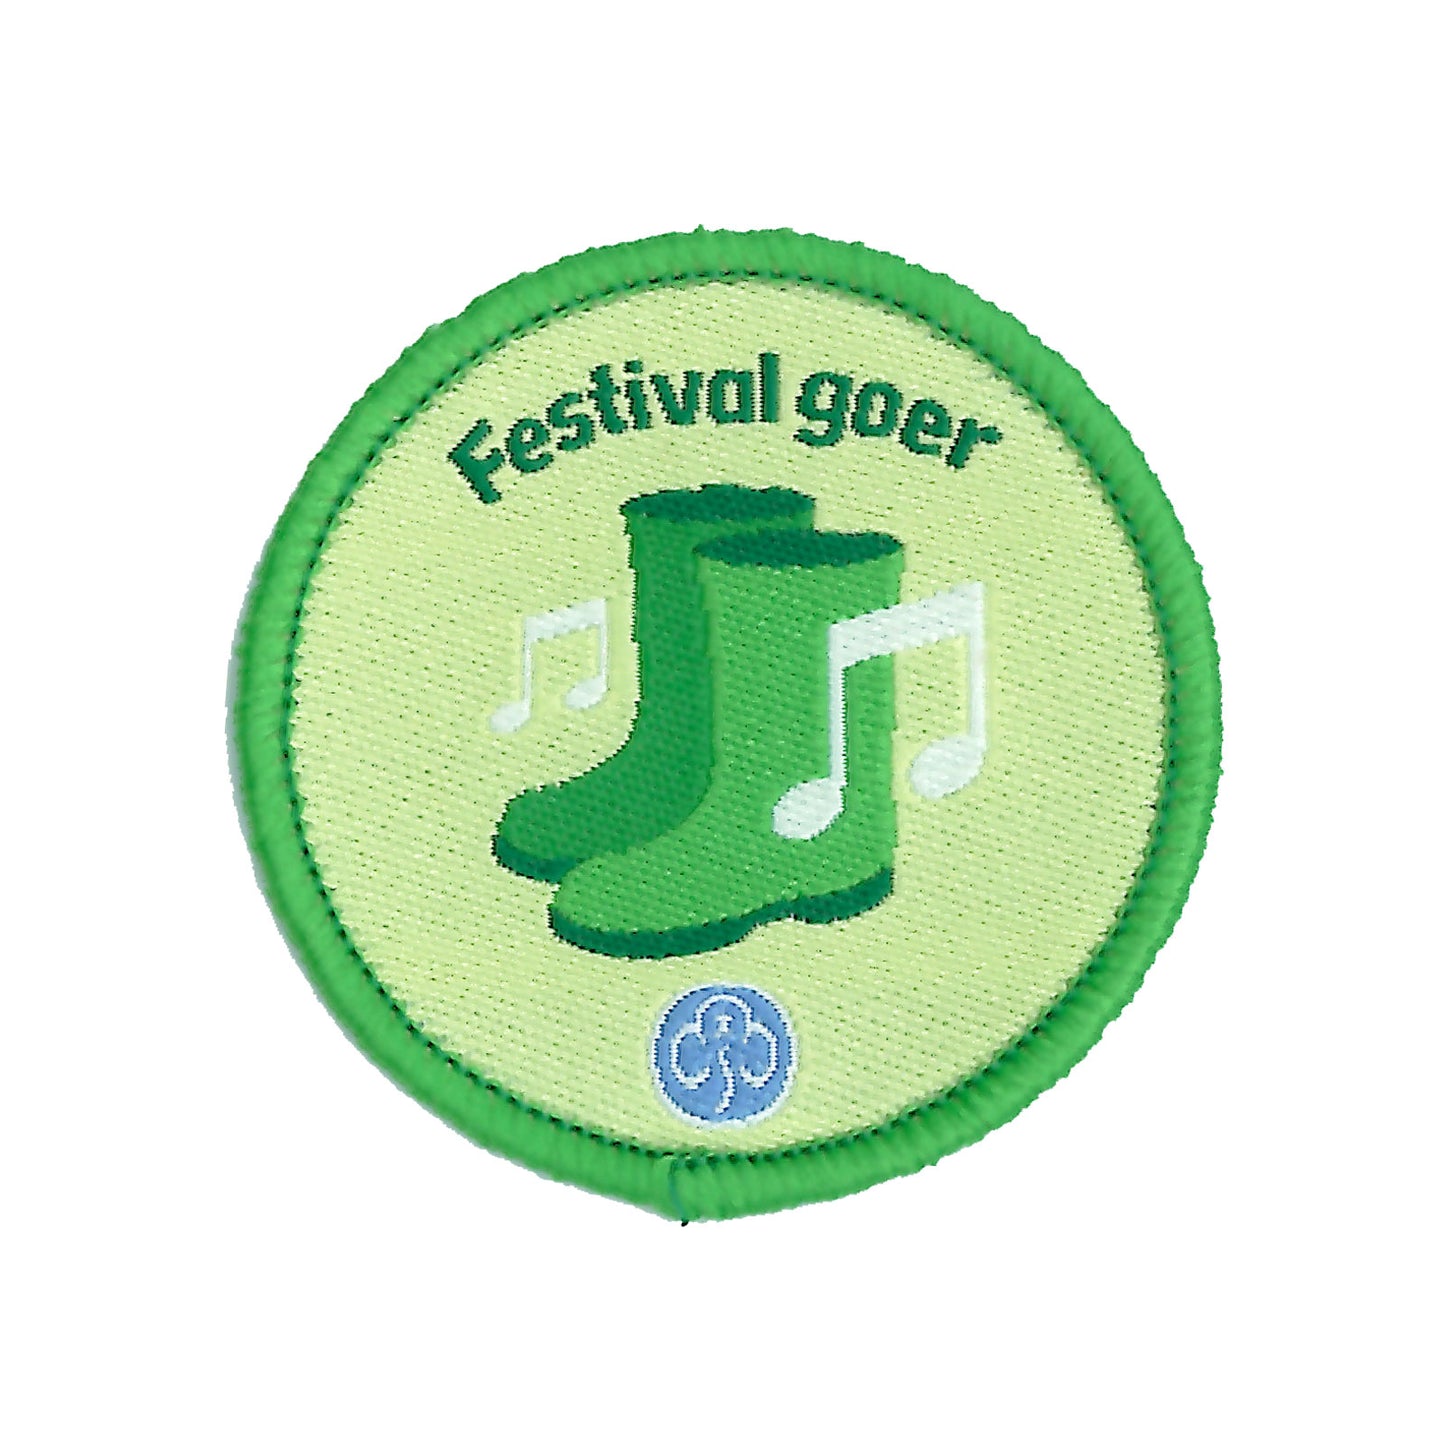 Rangers Festival Goer Woven Badge